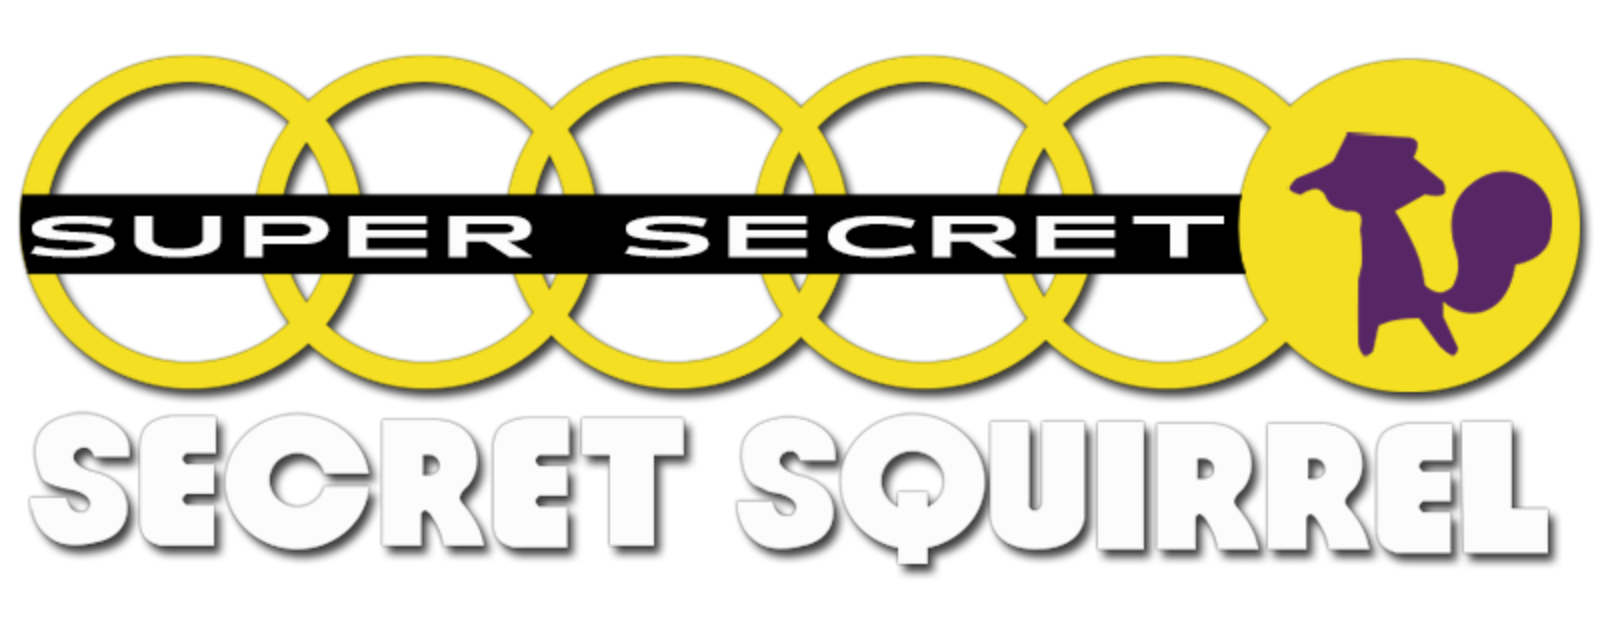 Super Secret Secret Squirrel